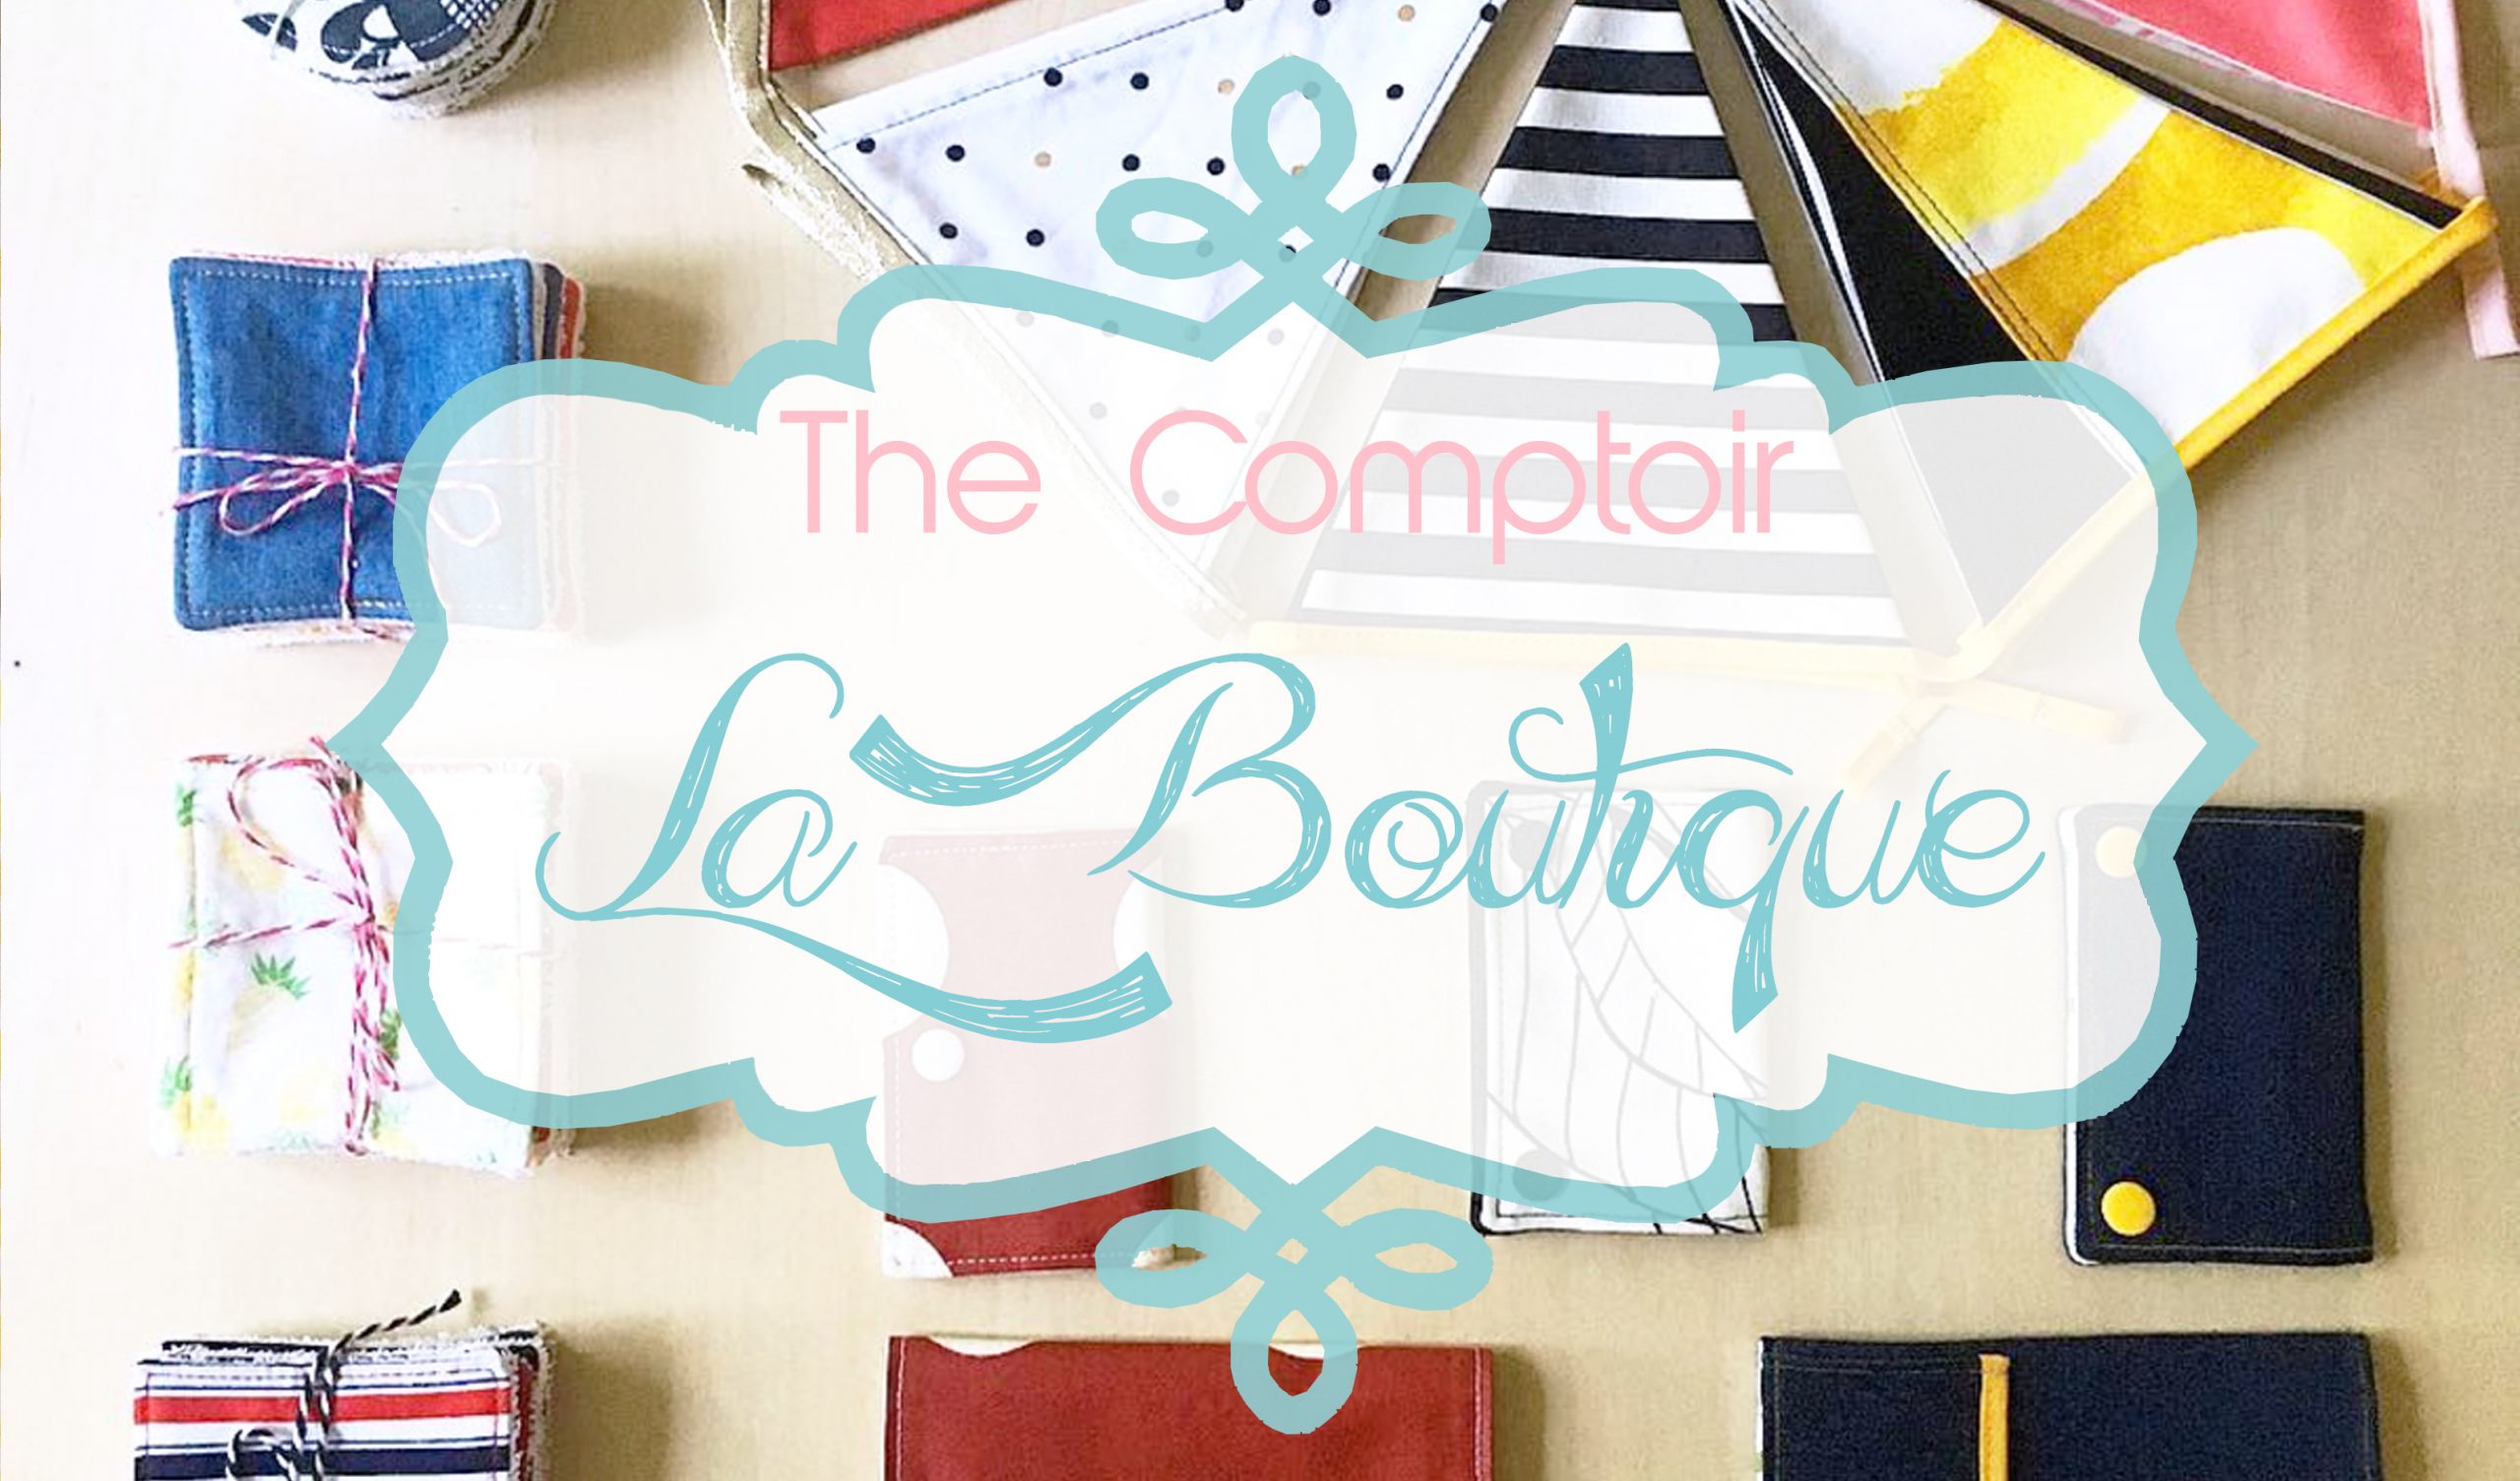 The Comptoir : La boutique !!